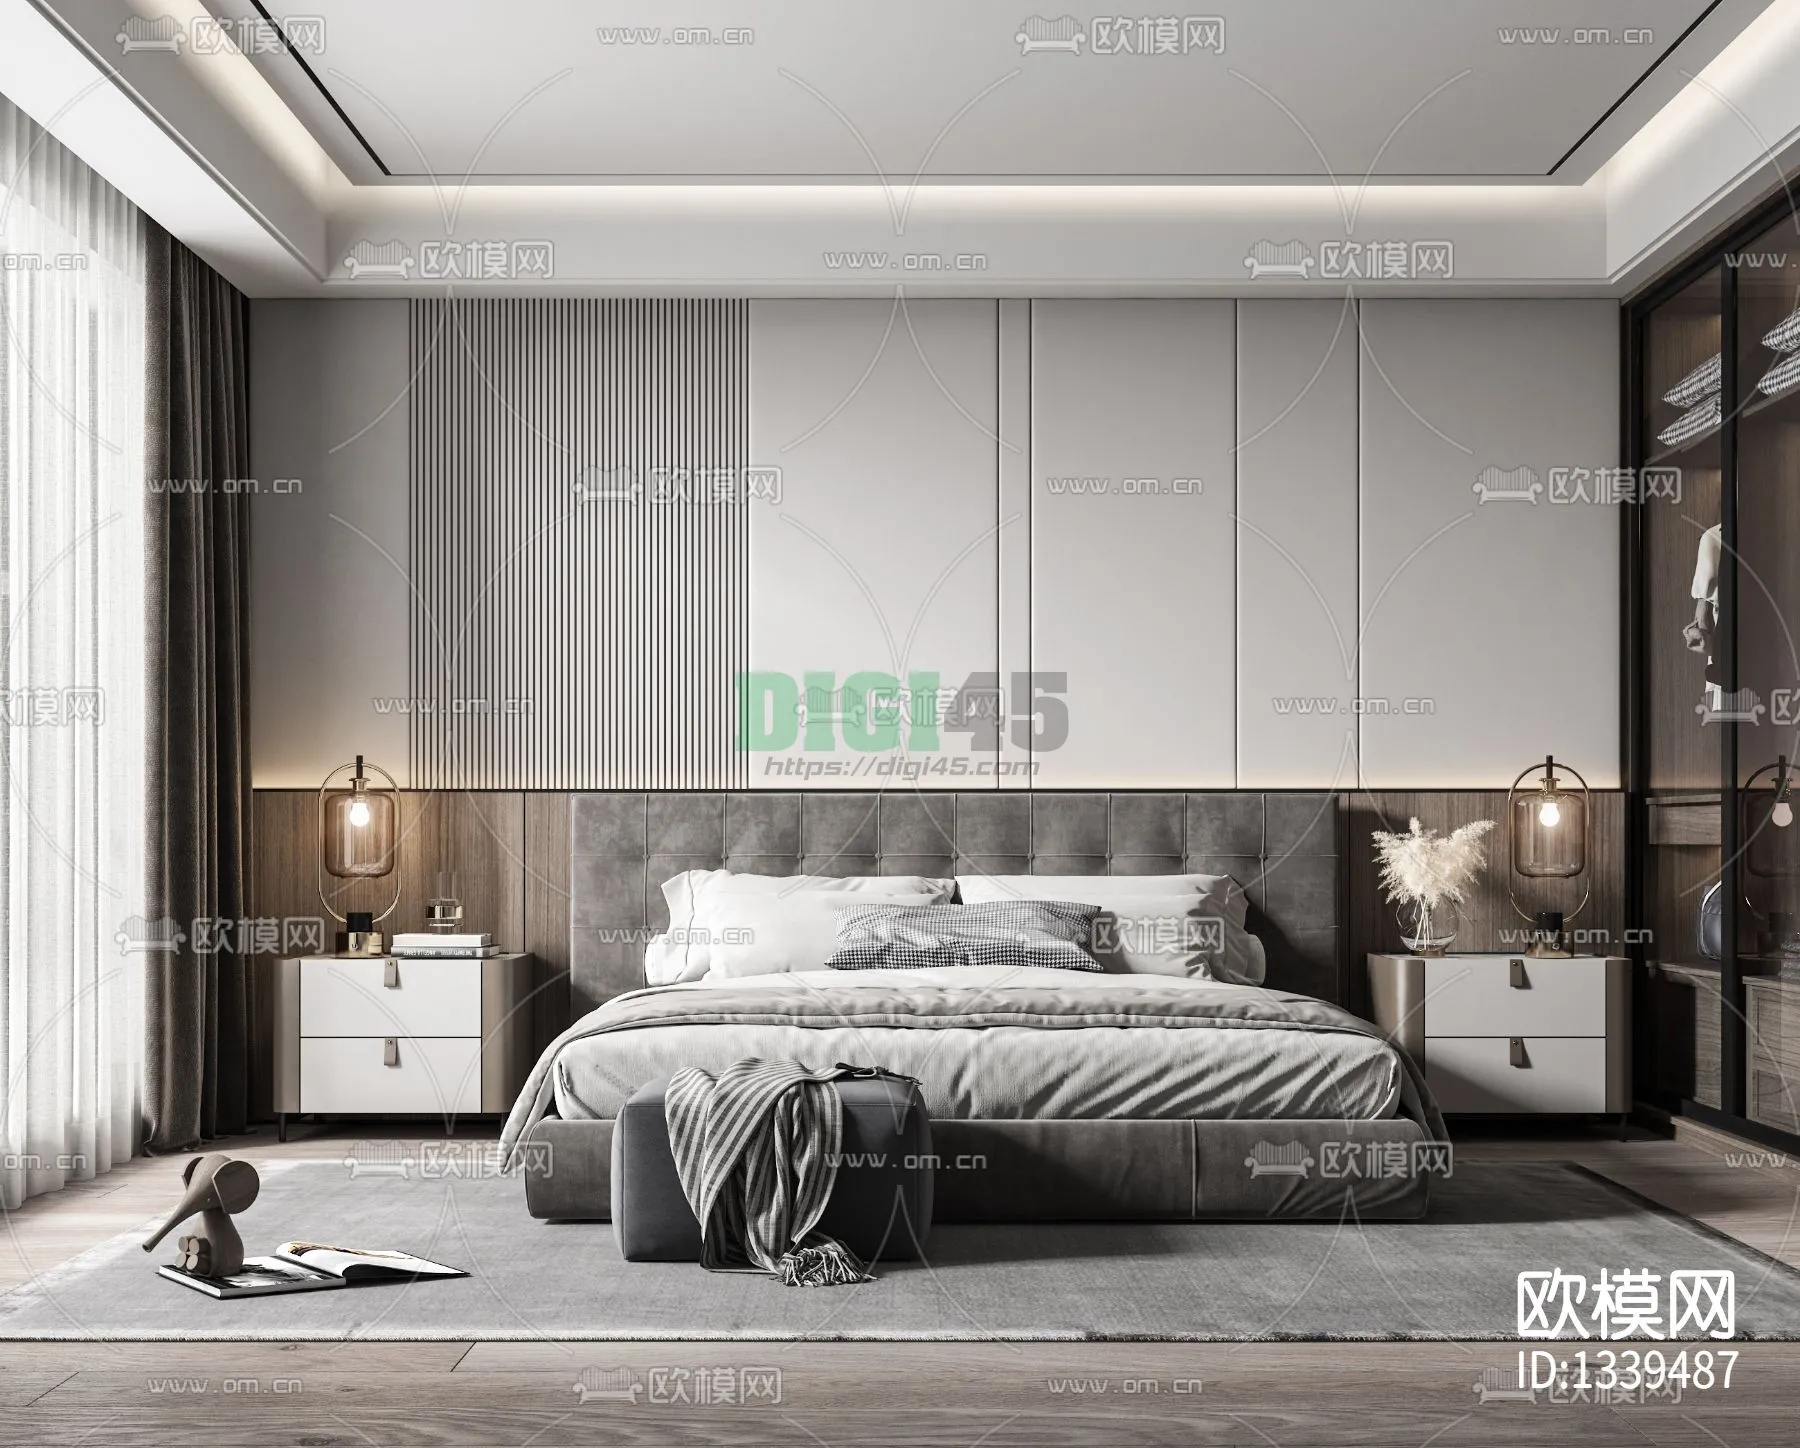 Bedroom 3D Scenes – 1152